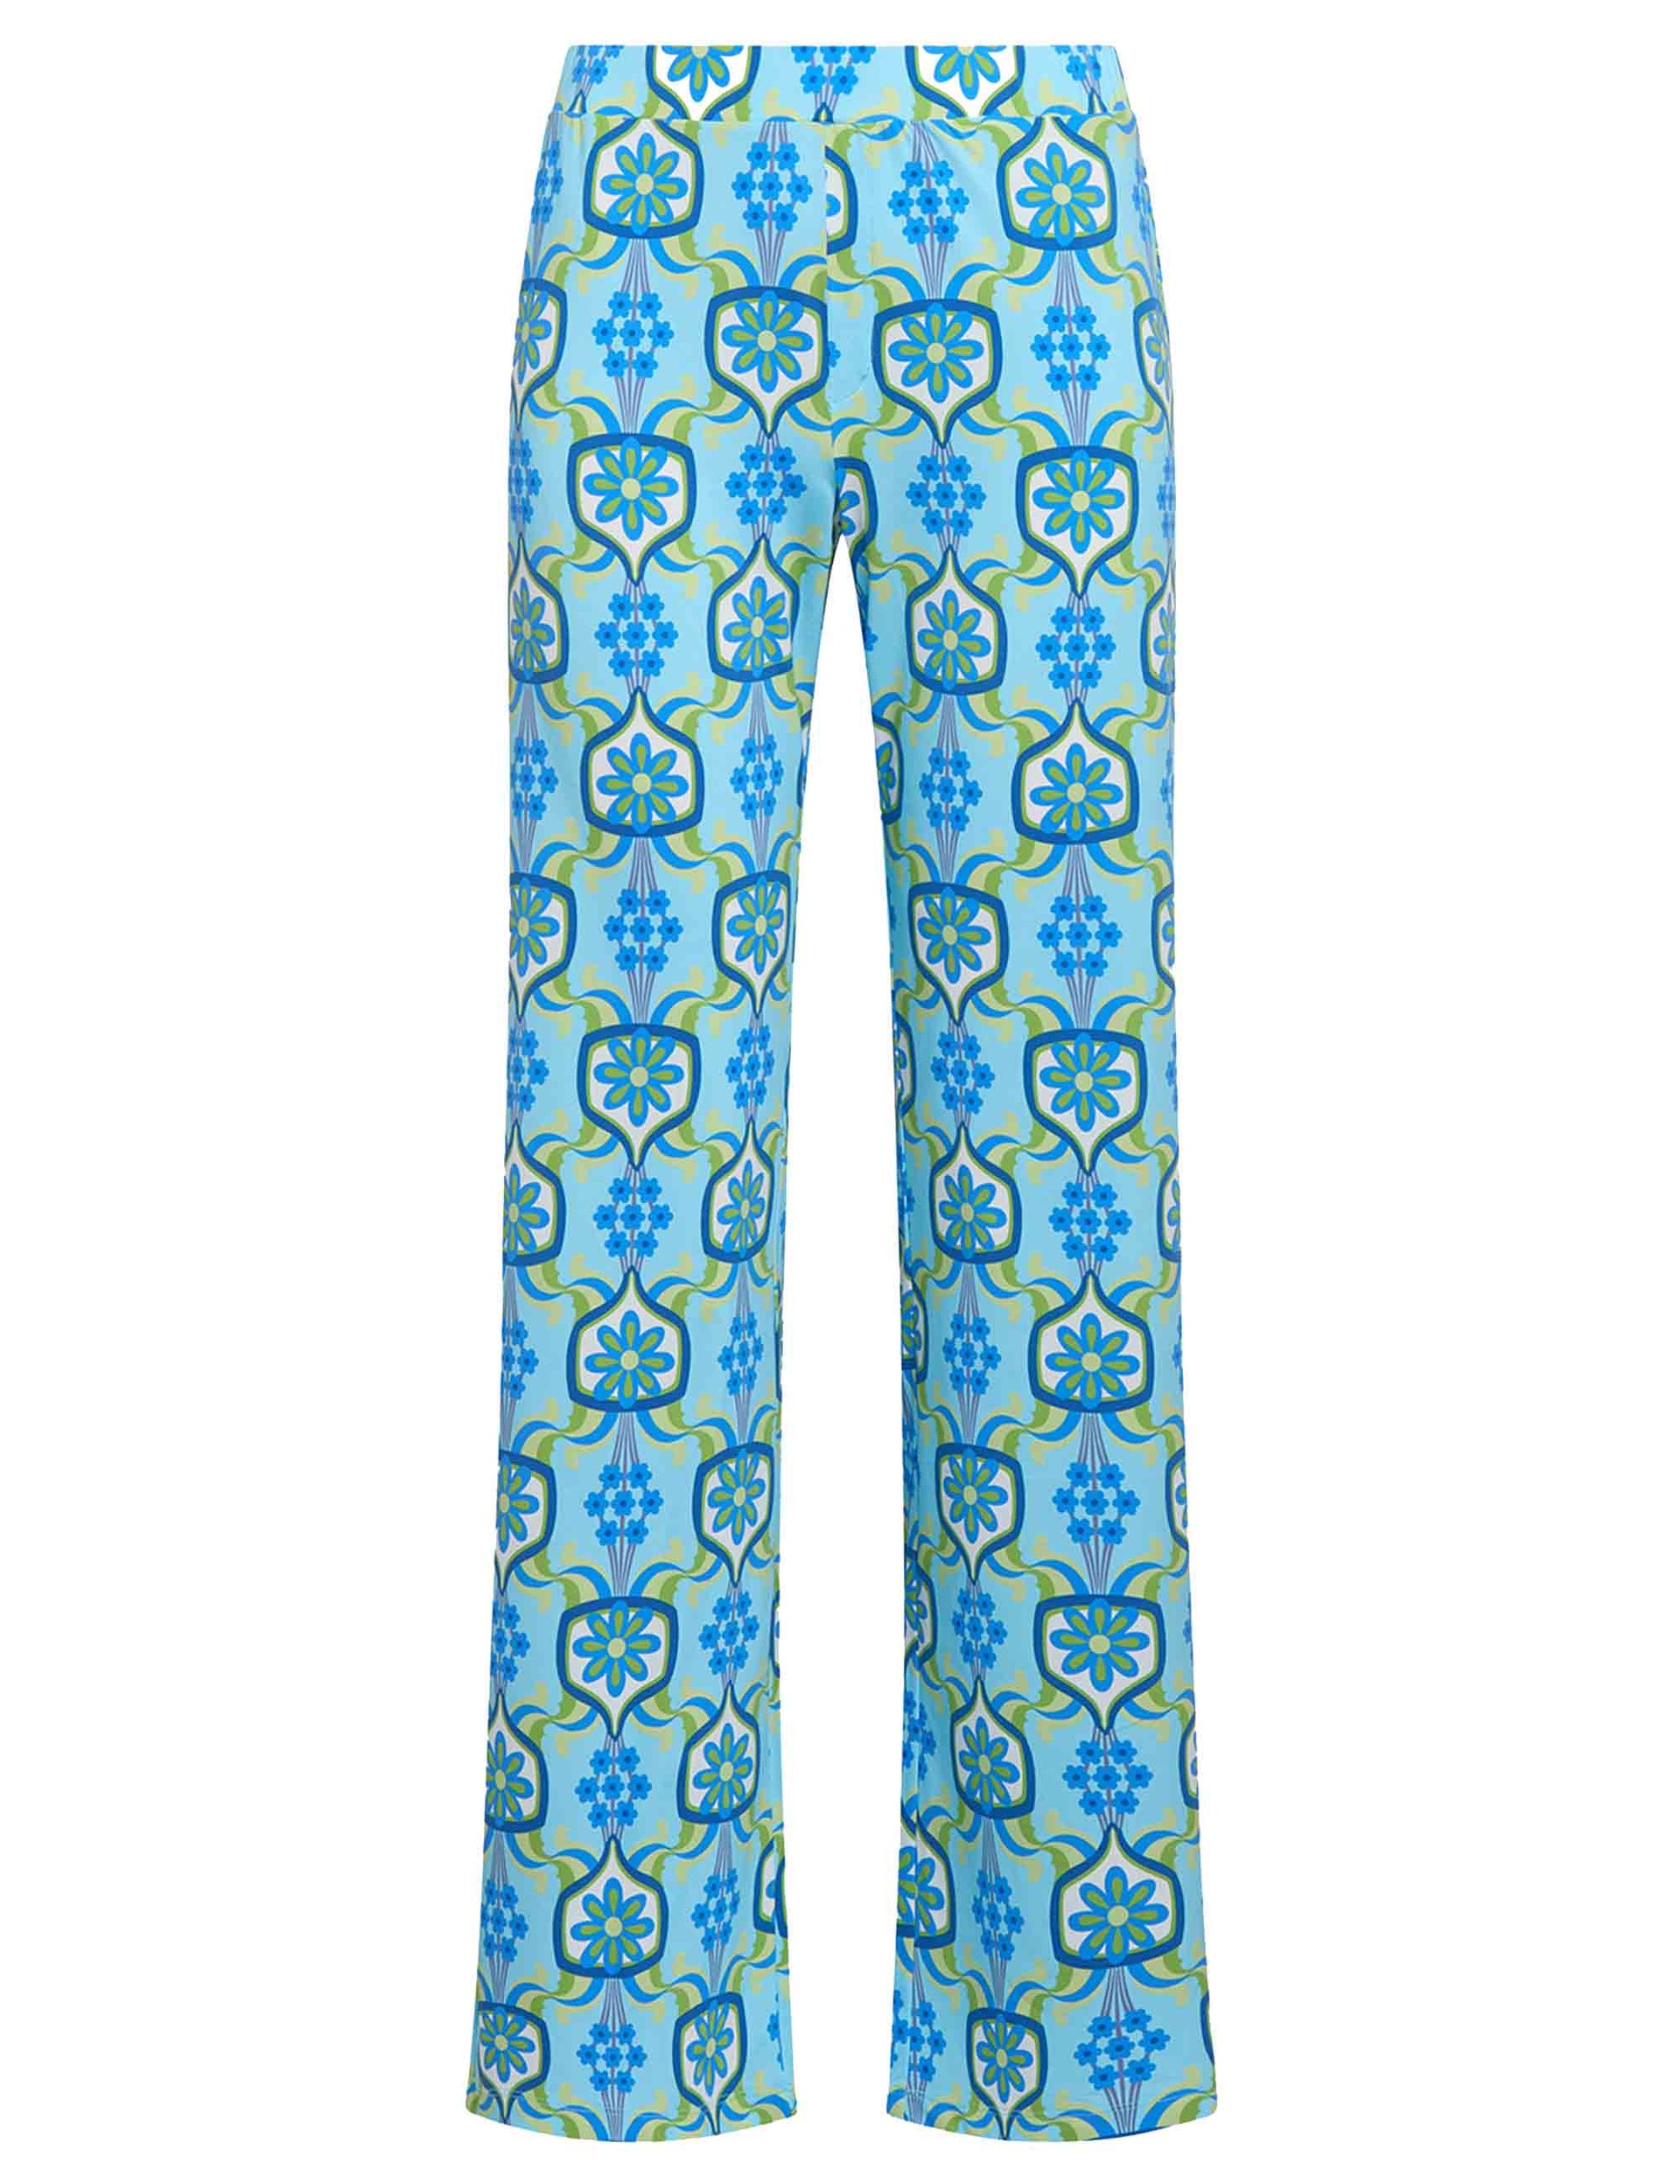 Marigold women's trousers in patterned light blue jersey